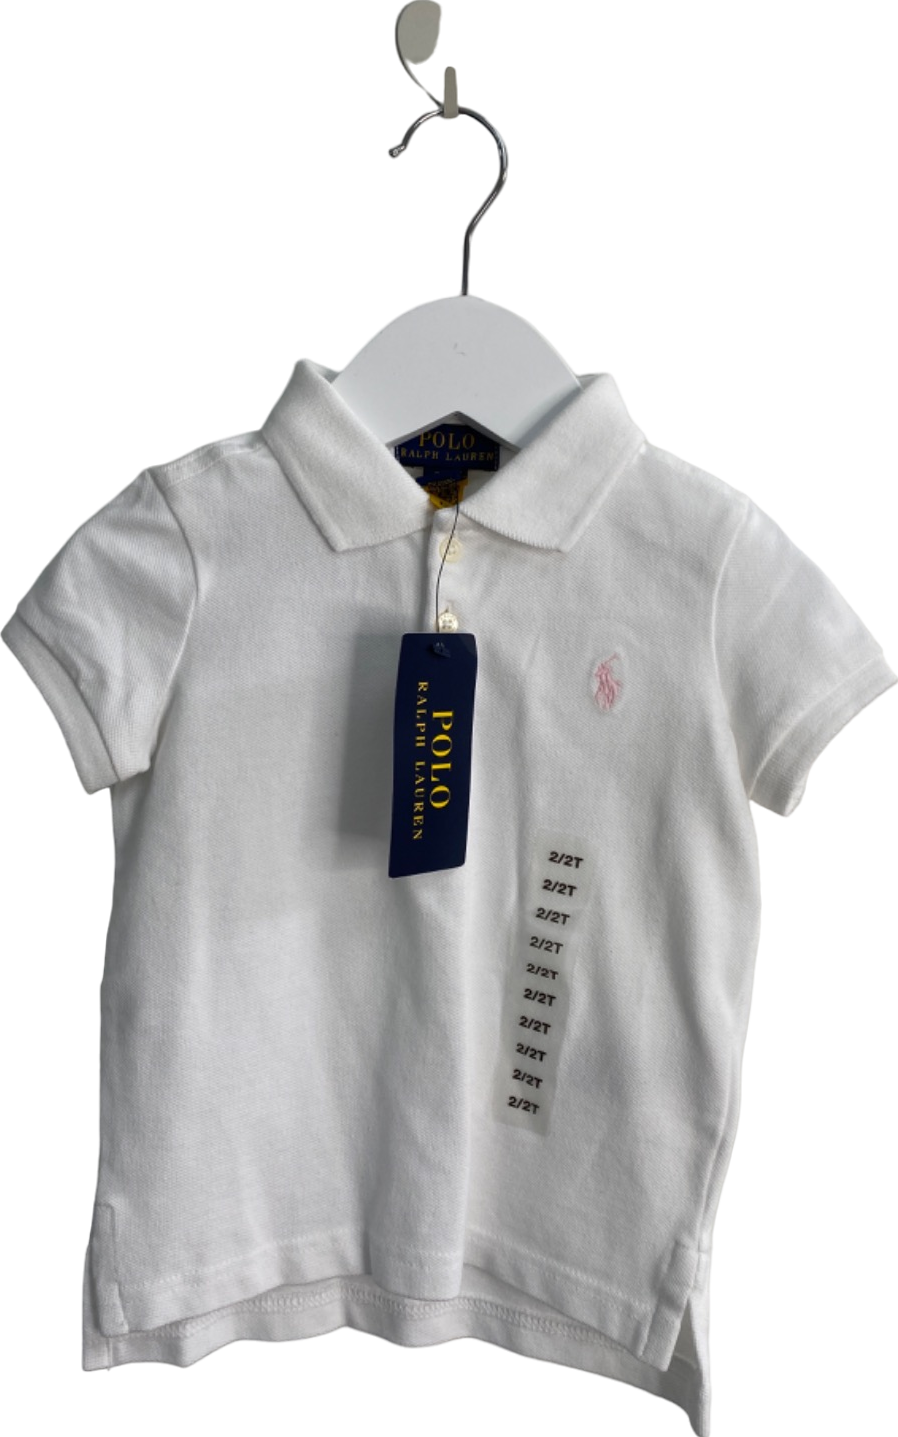 Ralph Lauren White SS Polo Shirt UK 2T